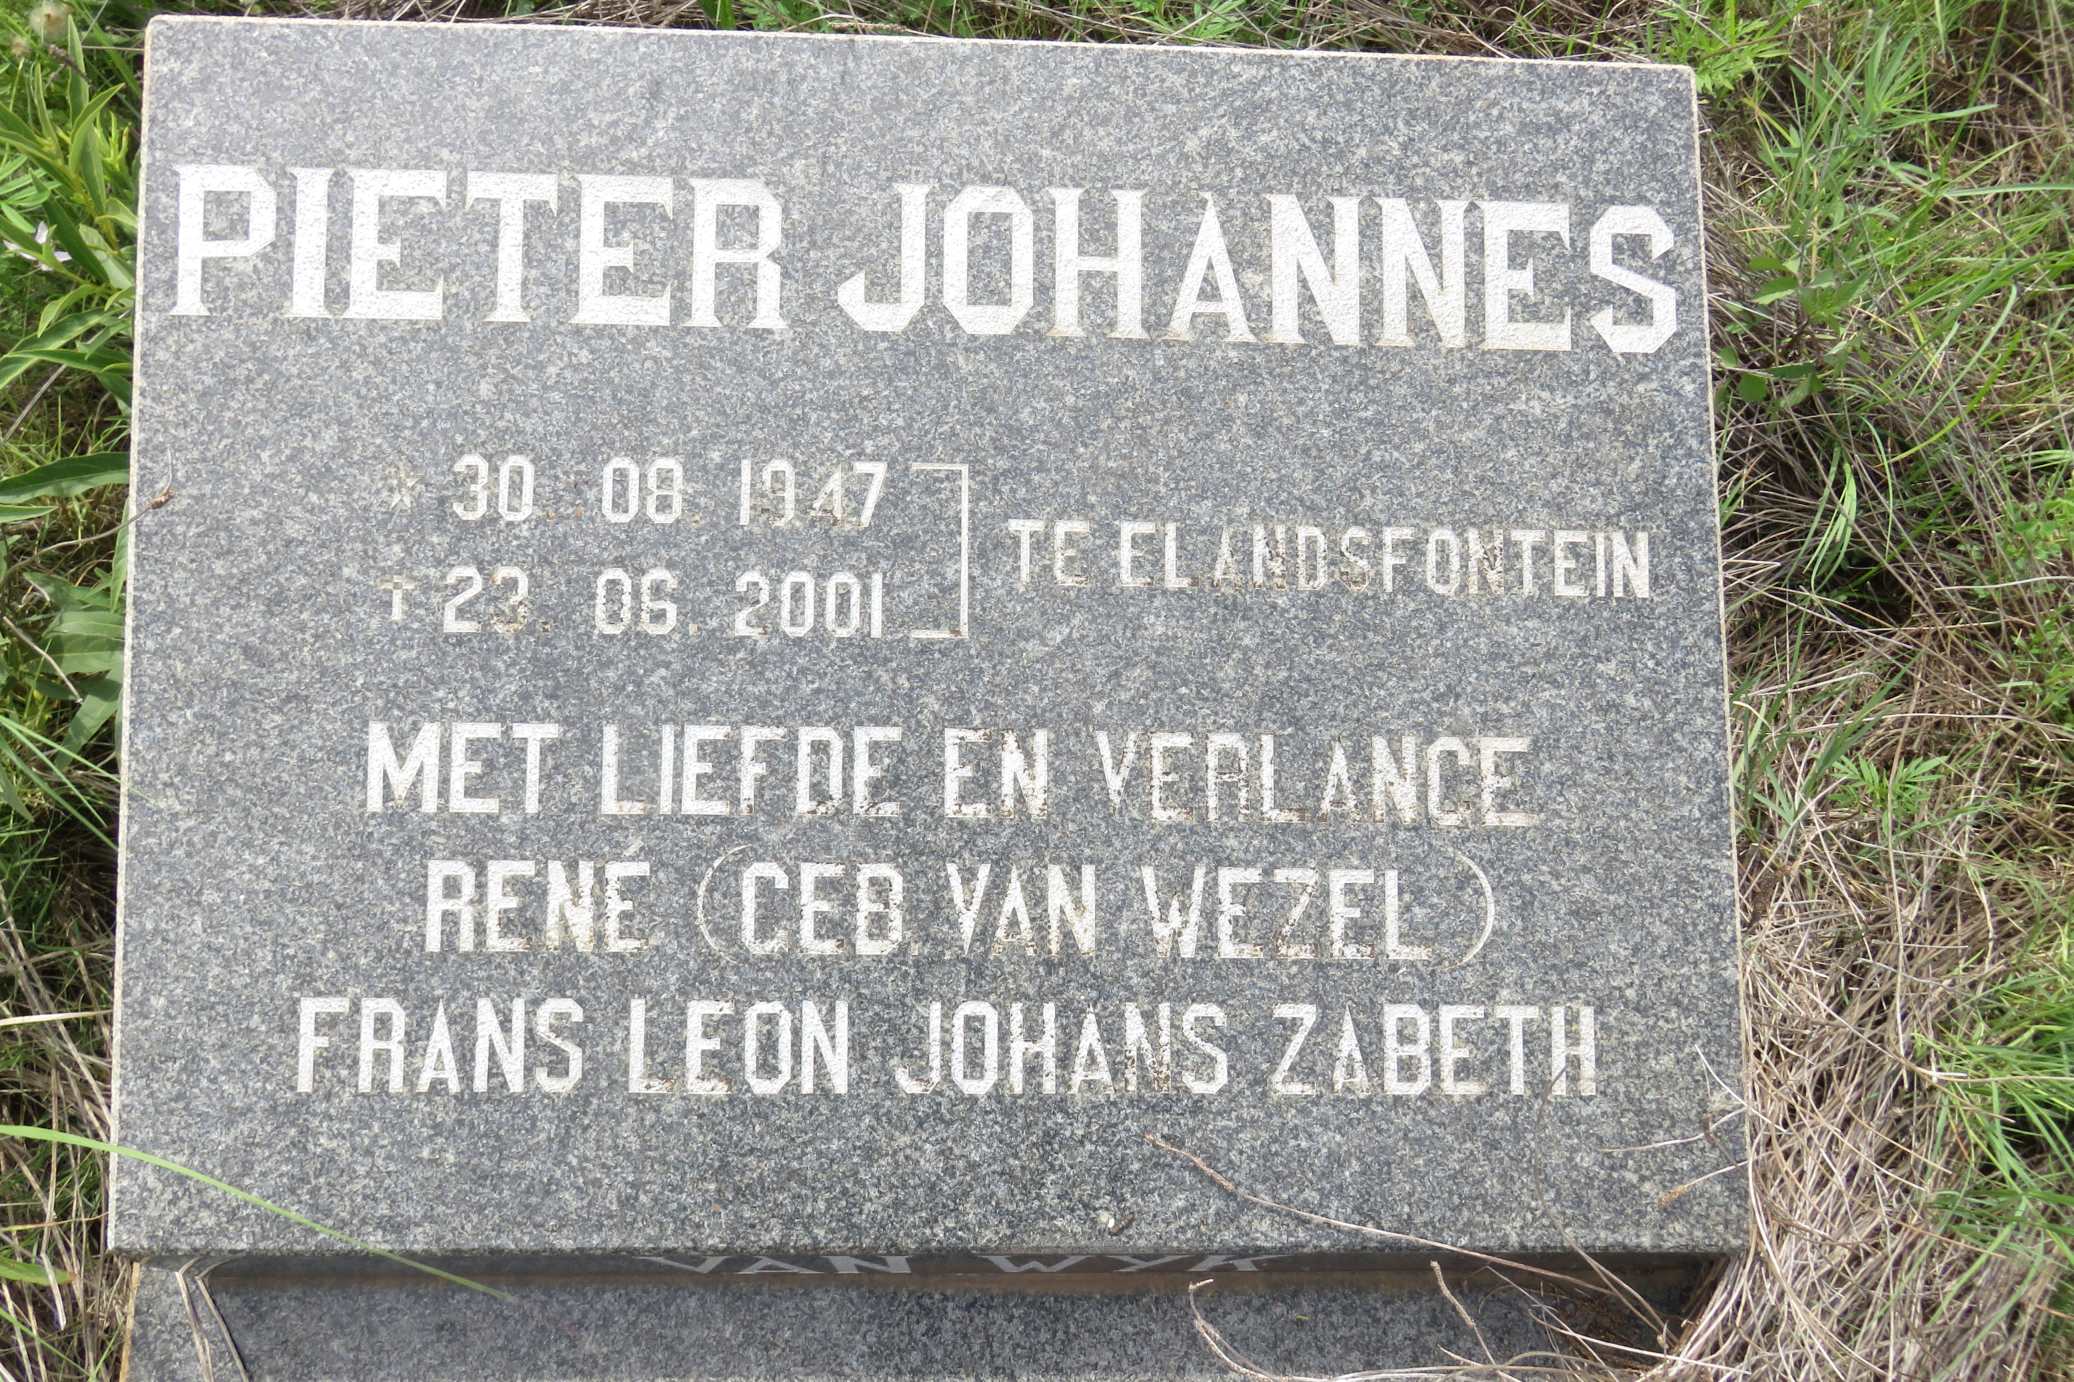 WYK Pieter Johannes, van 1947-2001